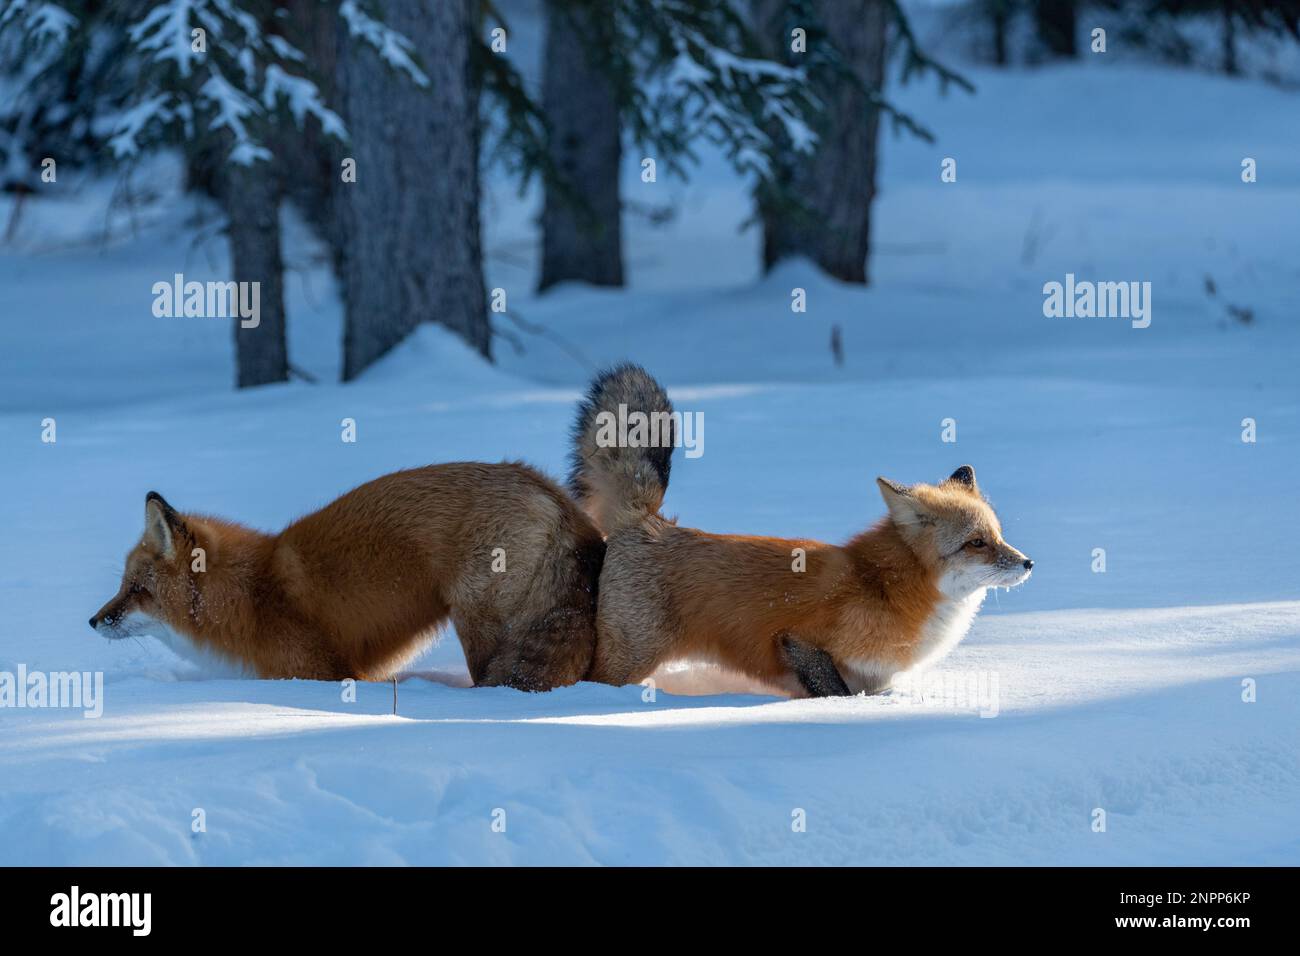 Deux renards rouges (mâles femelles Vulpes) vus en position d'accouplement pendant la saison d'hiver avec de la neige, fond blanc dans un environnement naturel et sauvage. Banque D'Images